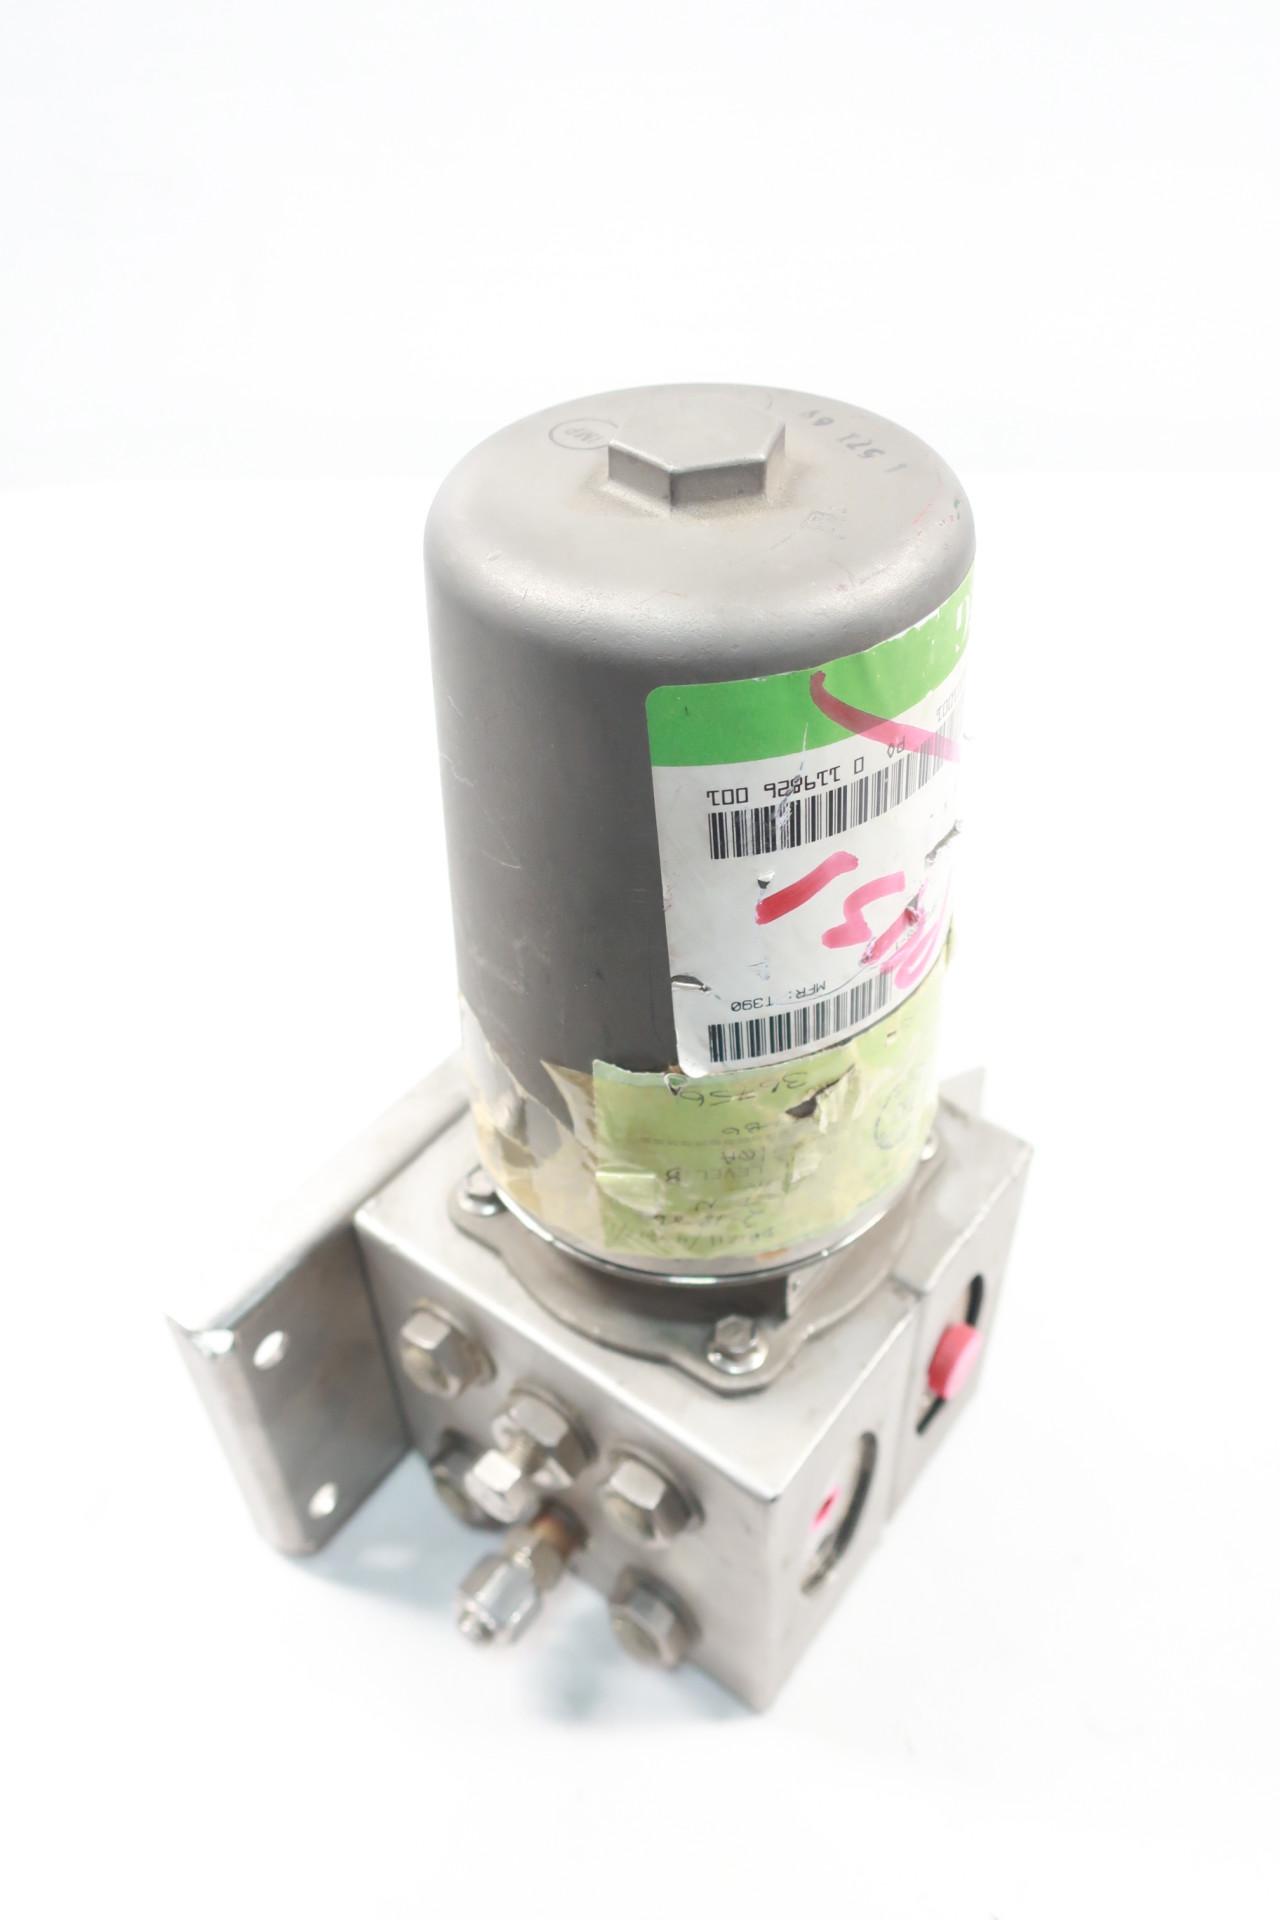 Tobar 32DP1211/43312/1 Pressure Transmitter 3375psi 20-45v-dc 